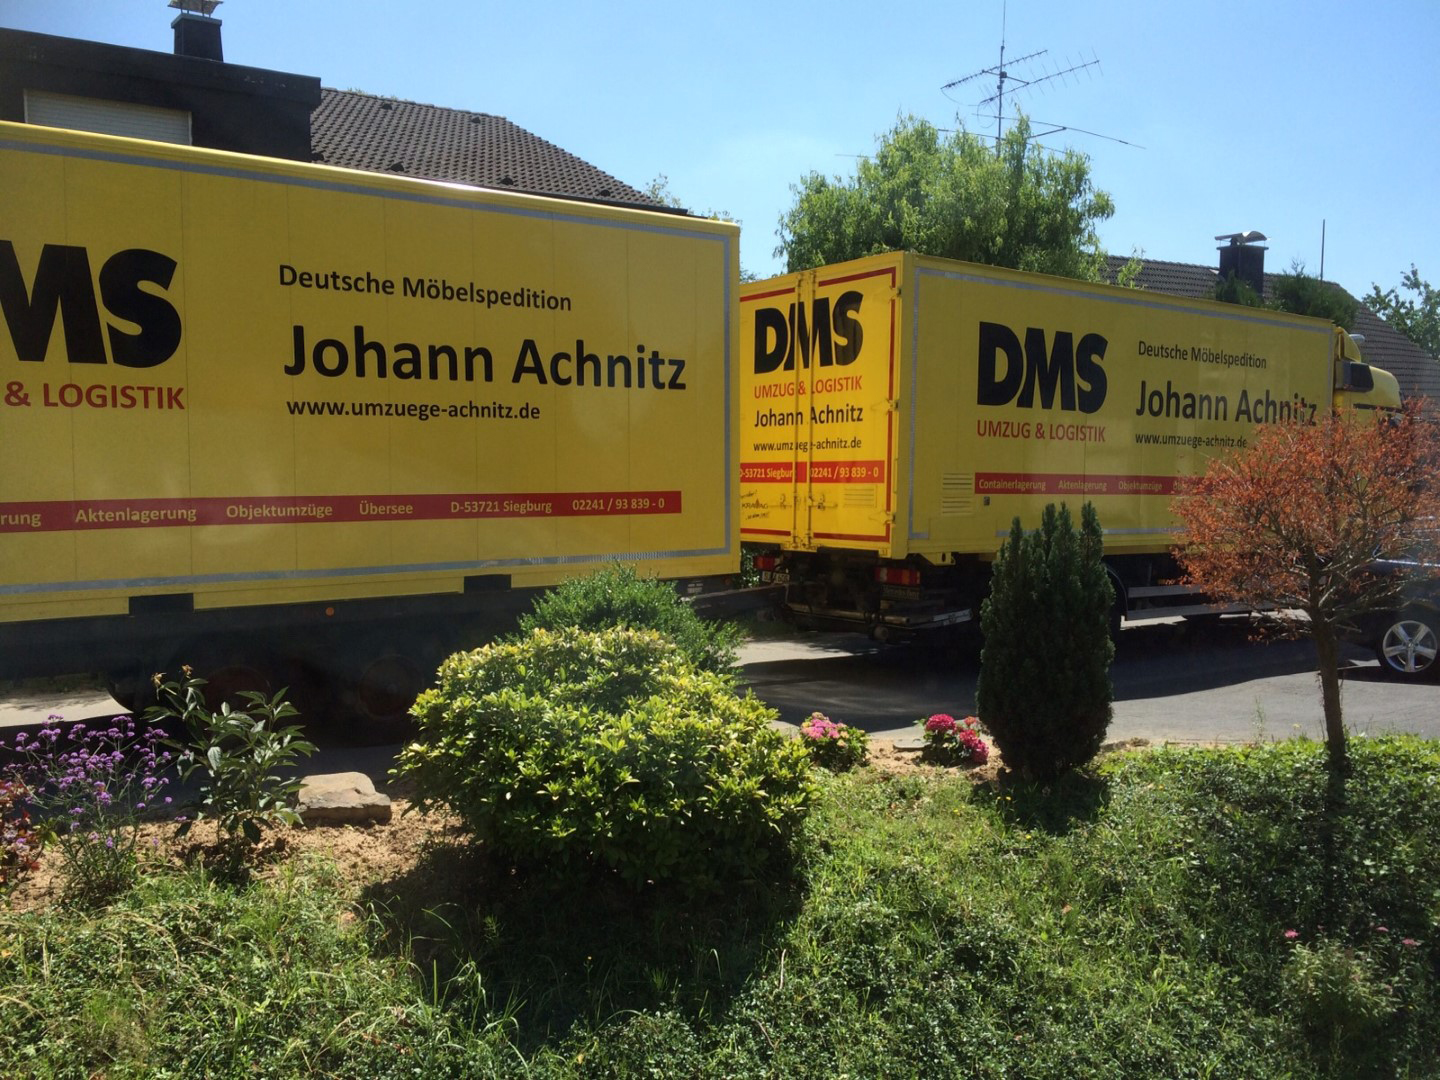 Das Bild zeigt das Umzugs- und Logistikunternehmen Johann Achnitz GmbH